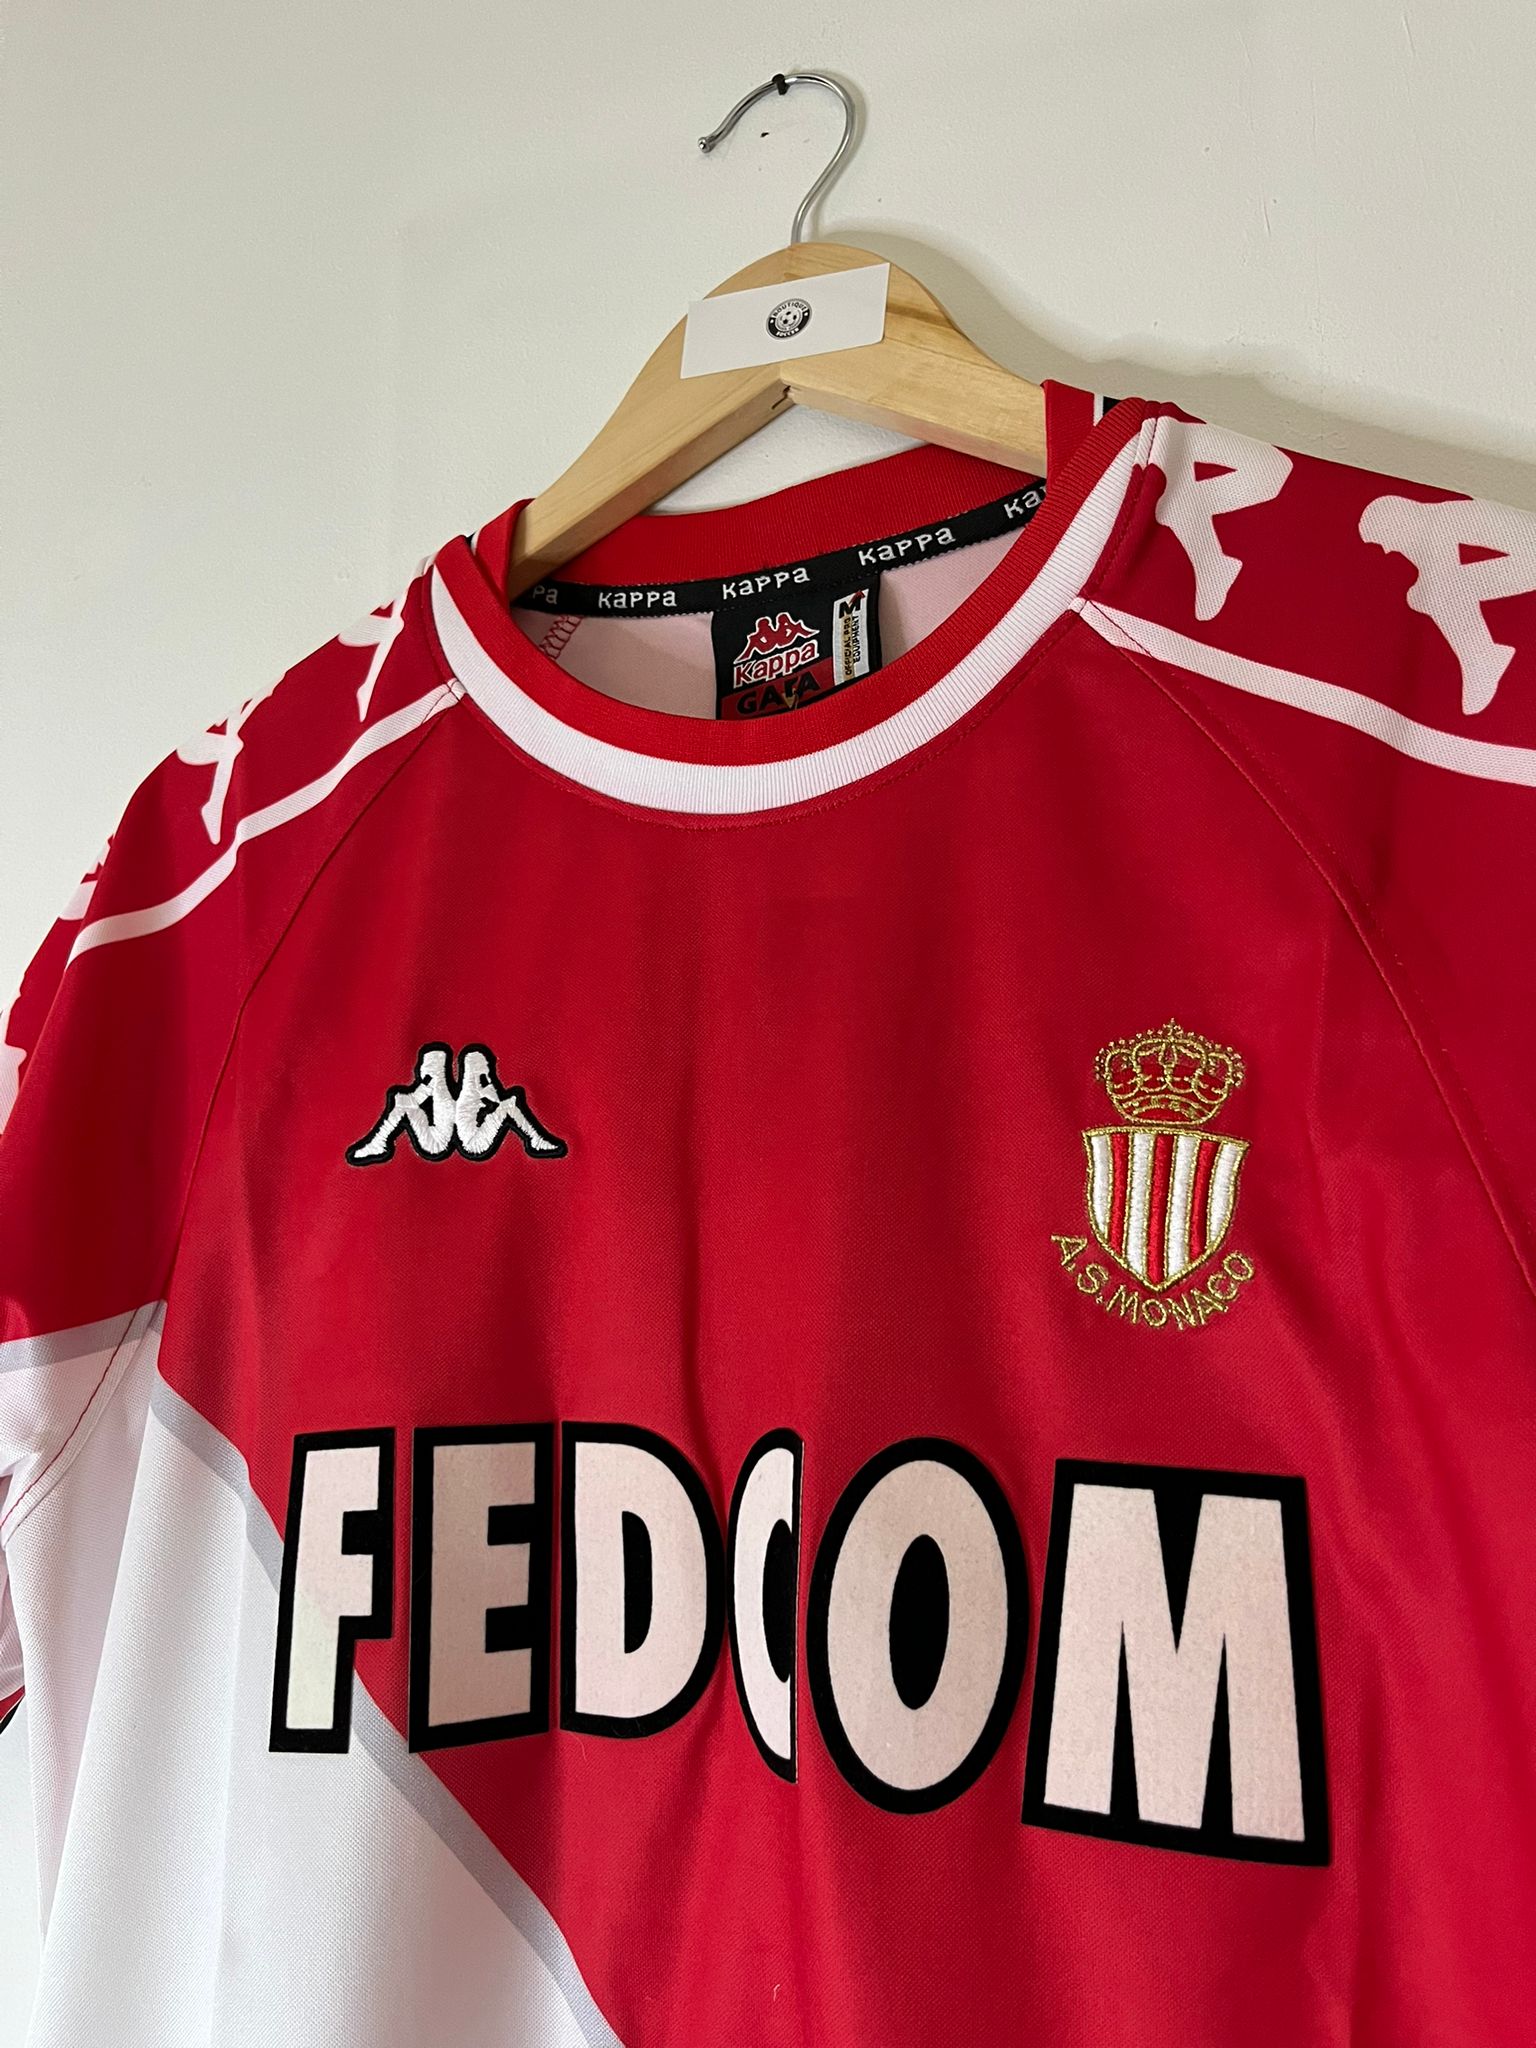 AS Monaco Retro shirt